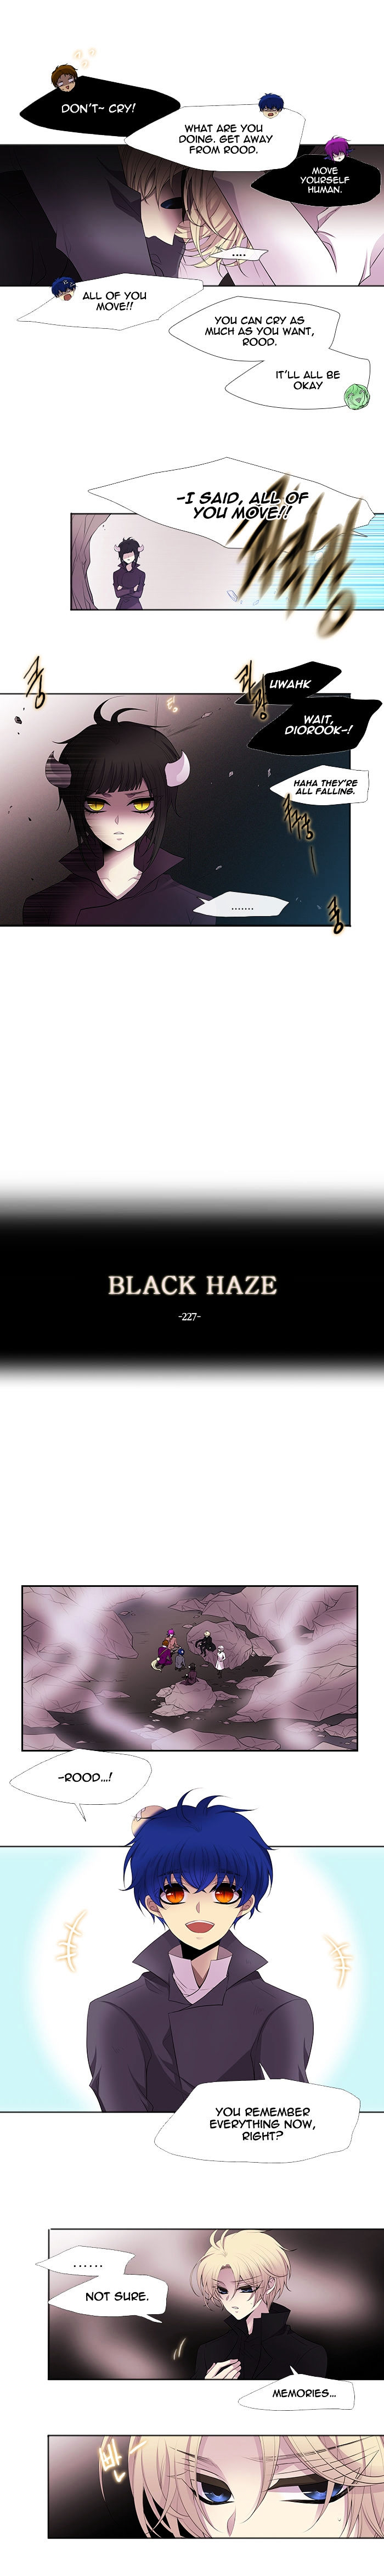 Black Haze 227 4